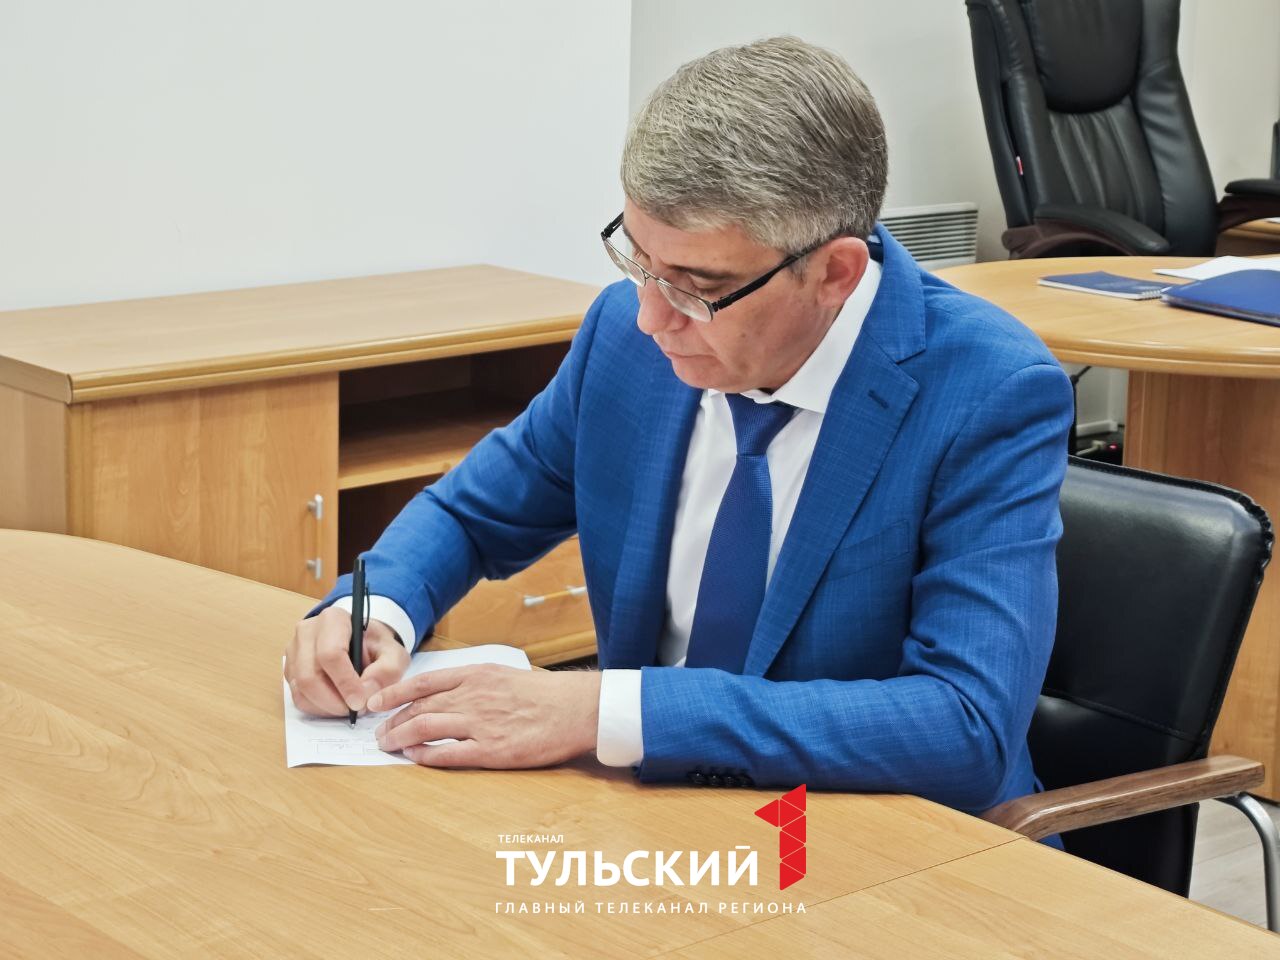 Дмитрий Миляев подал документы для участия в выборах Губернатора Тульской области